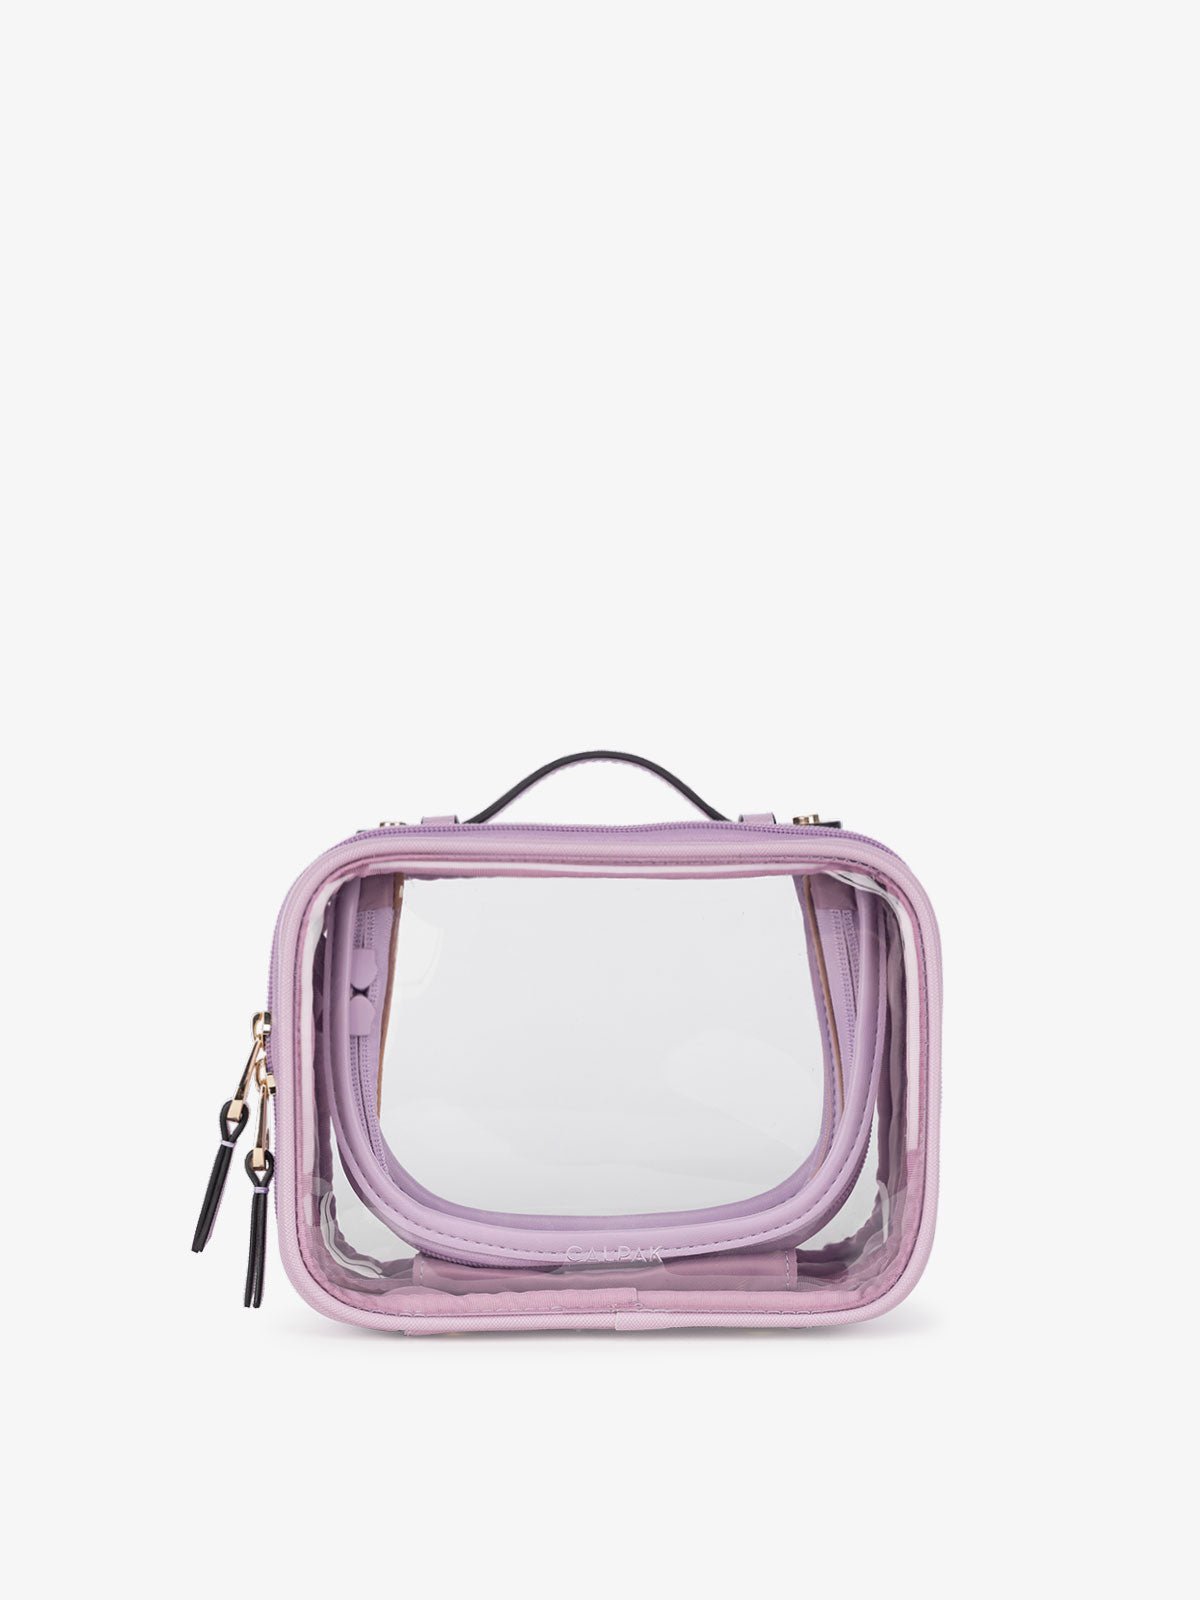 CALPAK mini clear cosmetics case in lavender purple